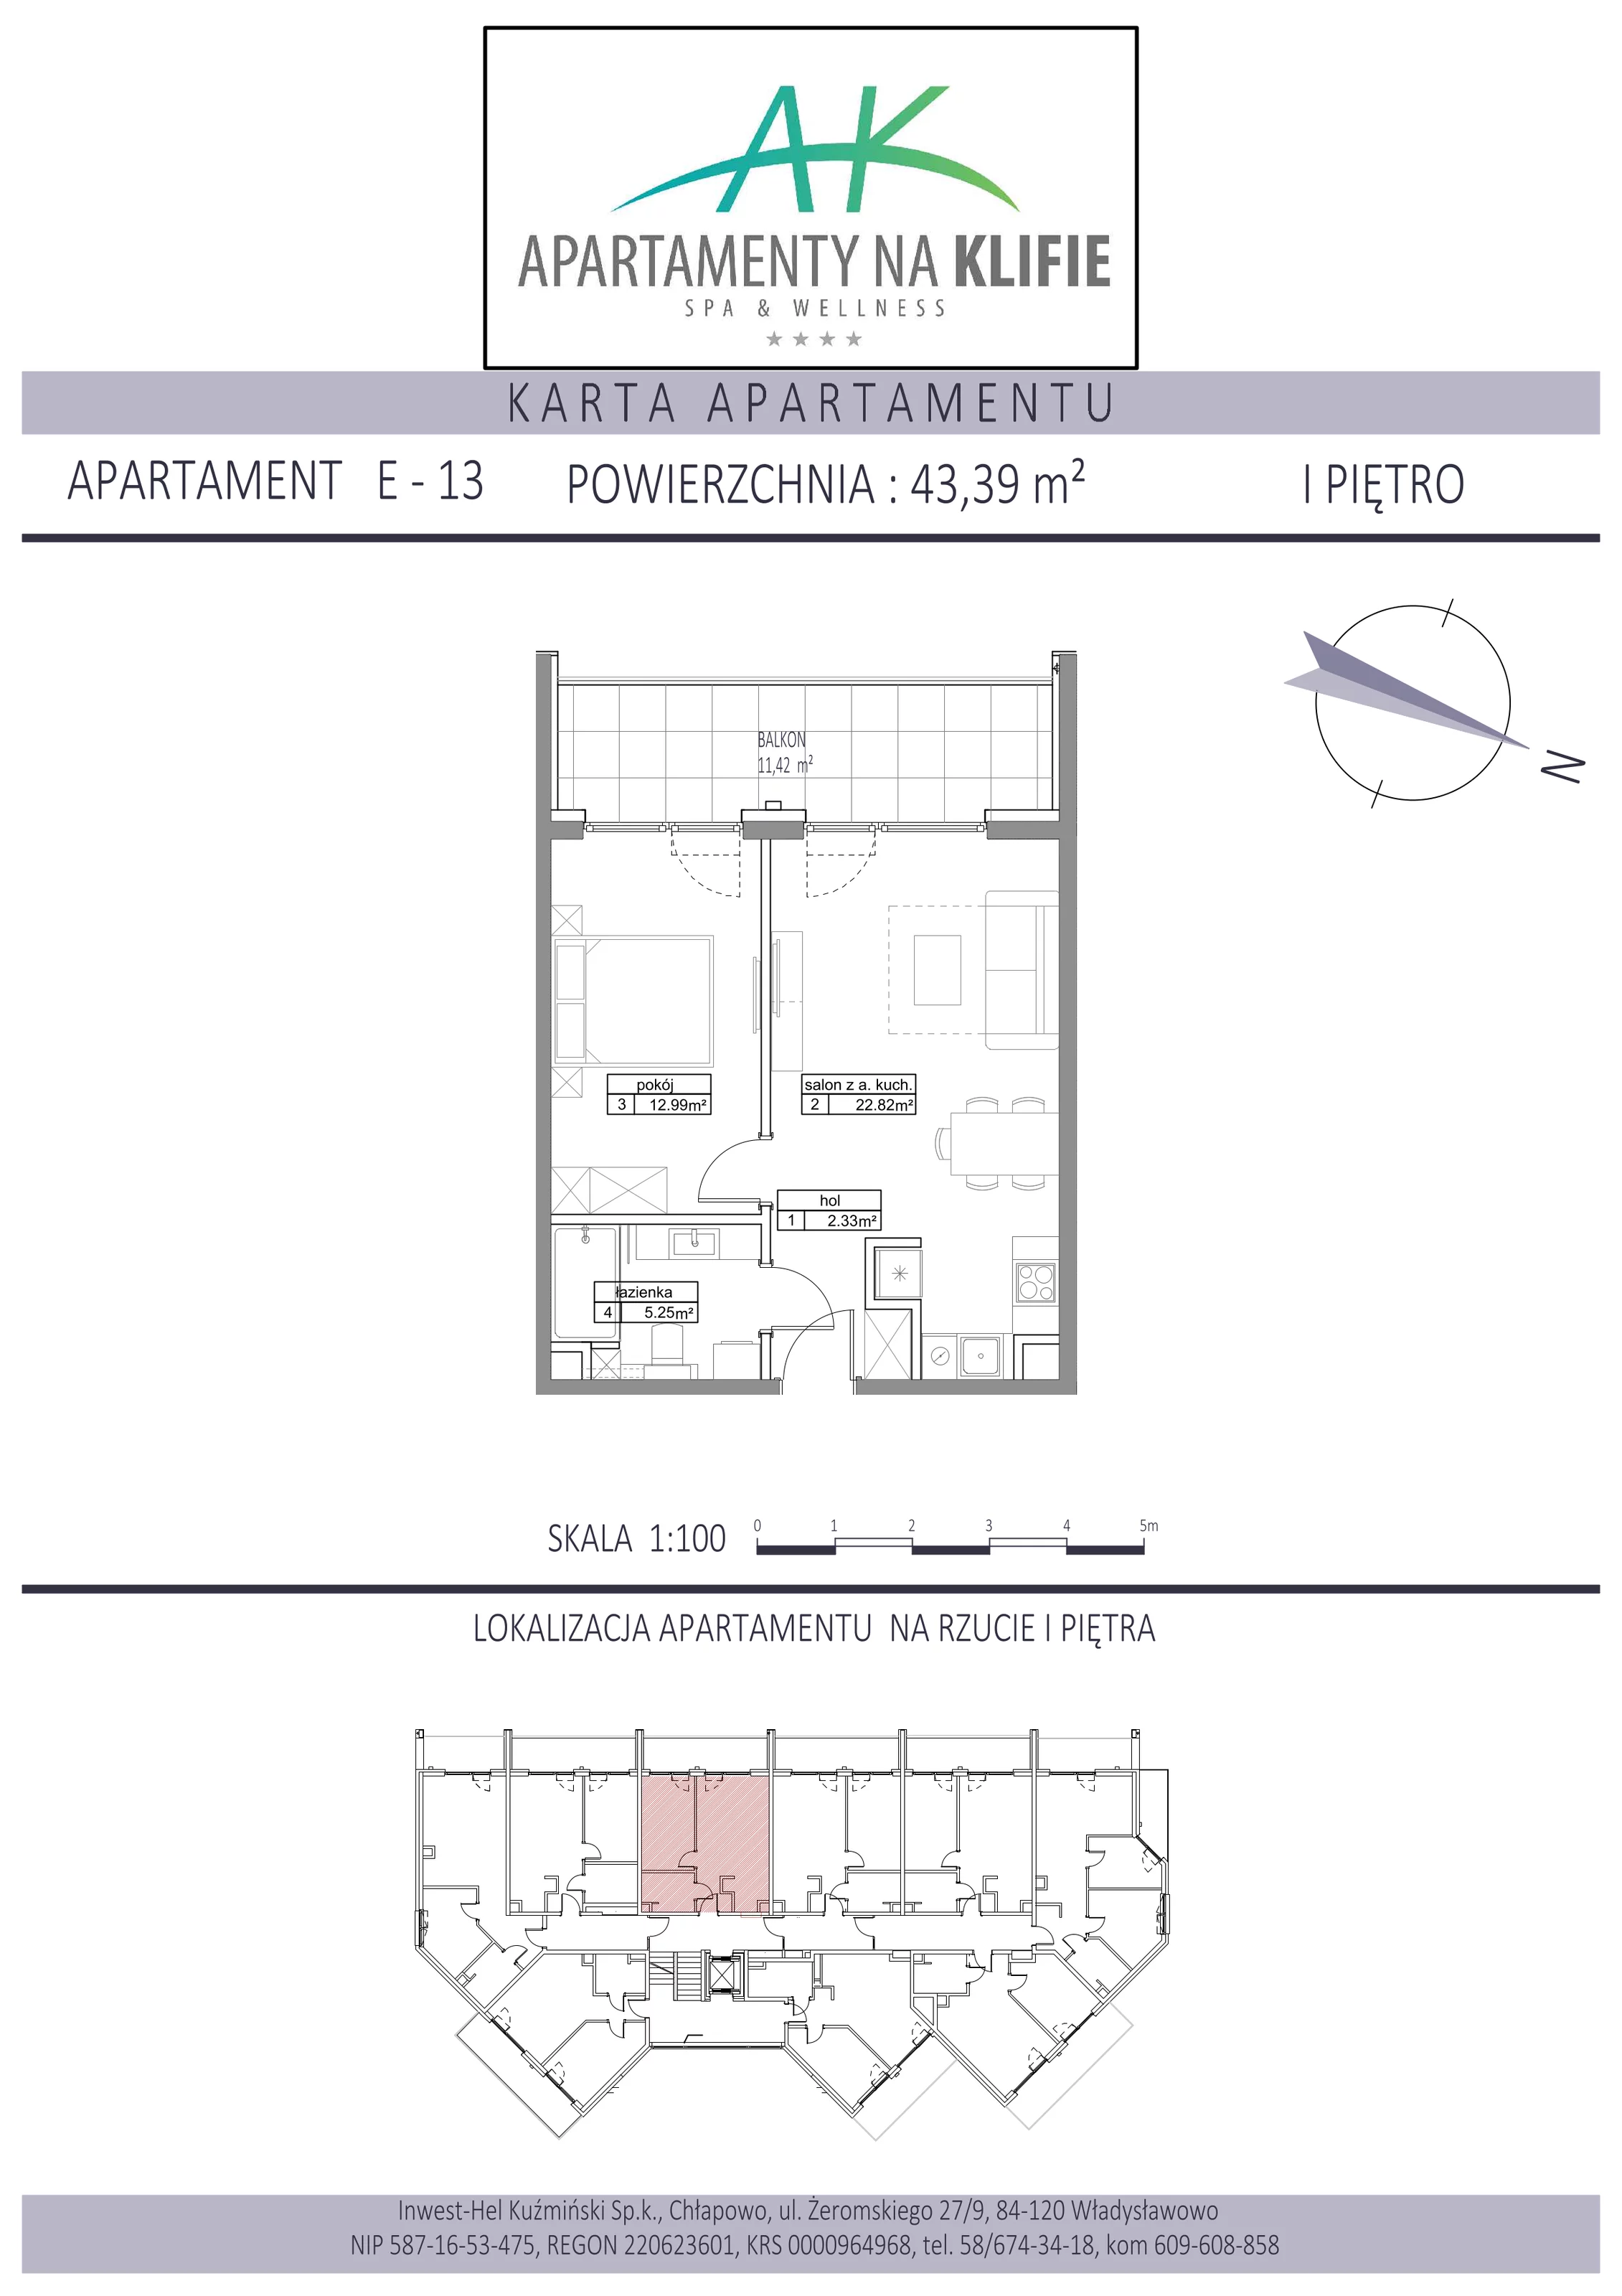 Apartament 43,39 m², piętro 1, oferta nr E-13, Apartamenty na Klifie, Władysławowo, Chłapowo, ul. Żeromskiego 27